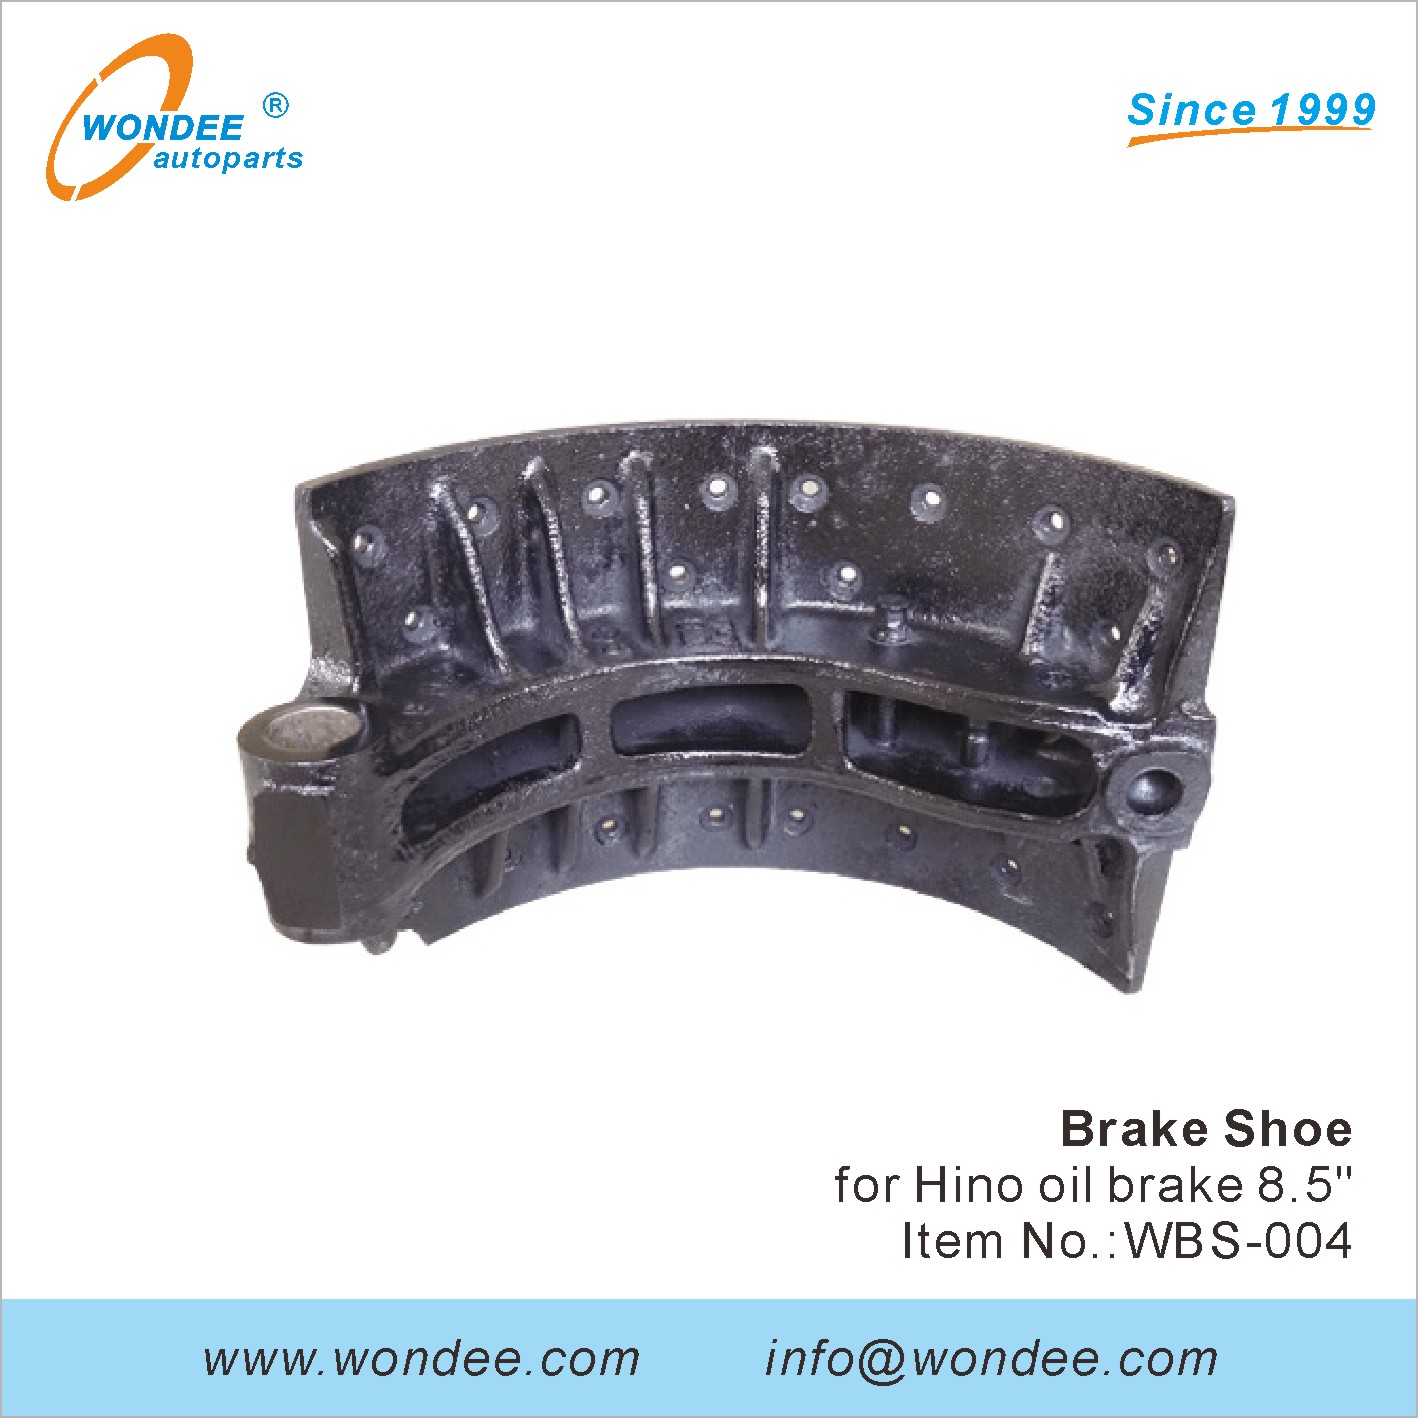 WONDEE brake shoe (4)